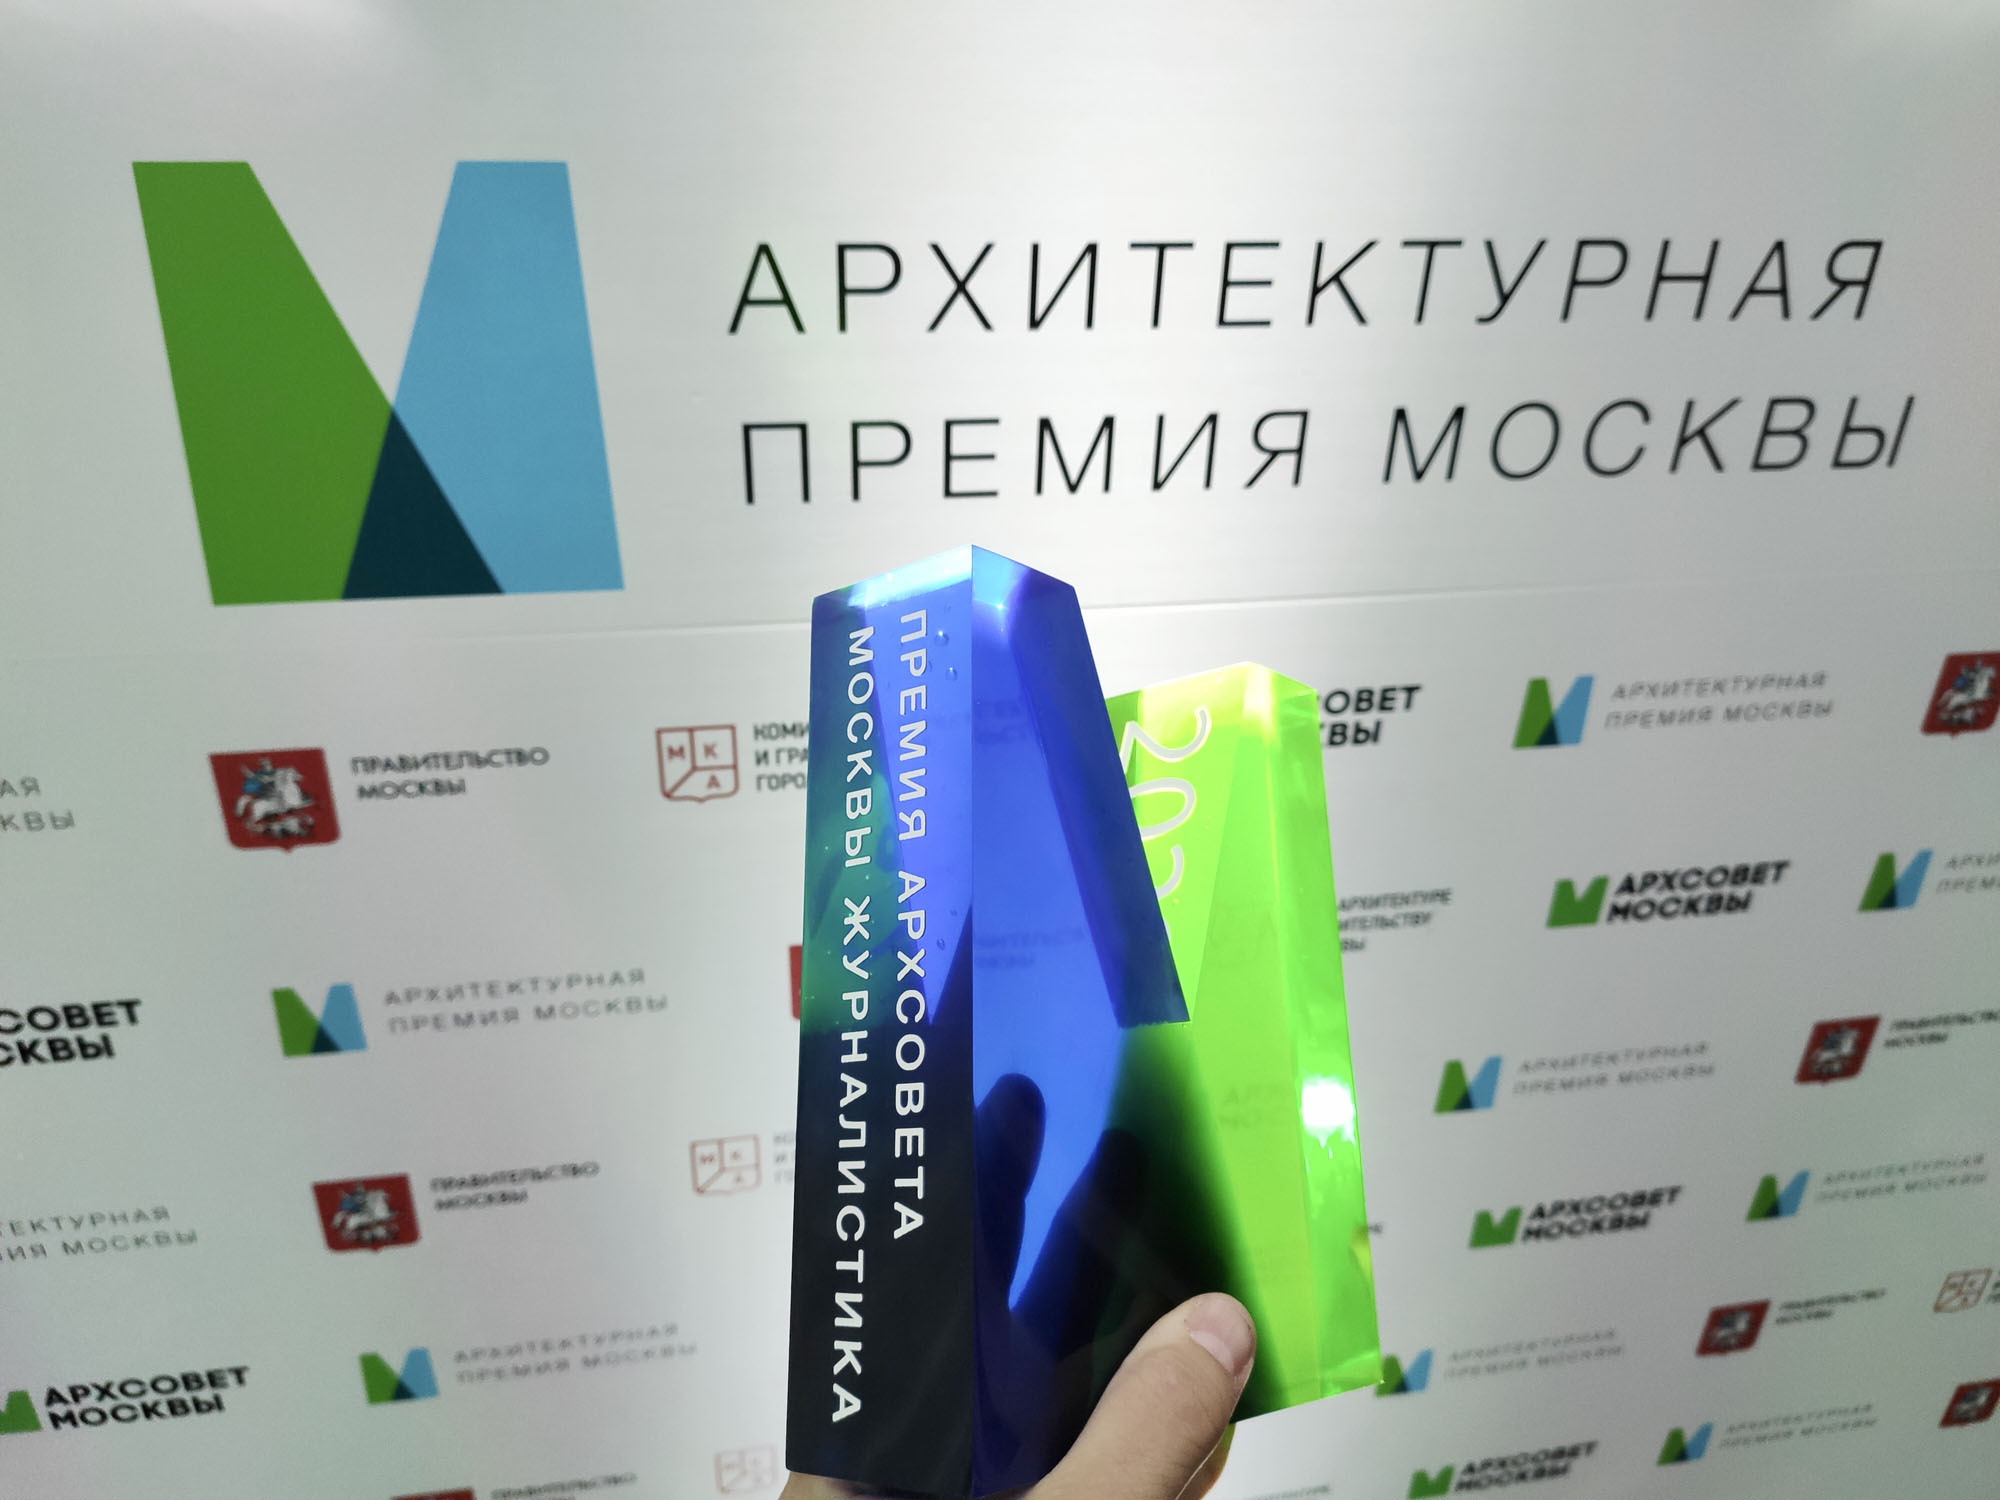 ARCHITIME.RU был удостоен Премии Архсовета Москвы в области архитектурной журналистики!